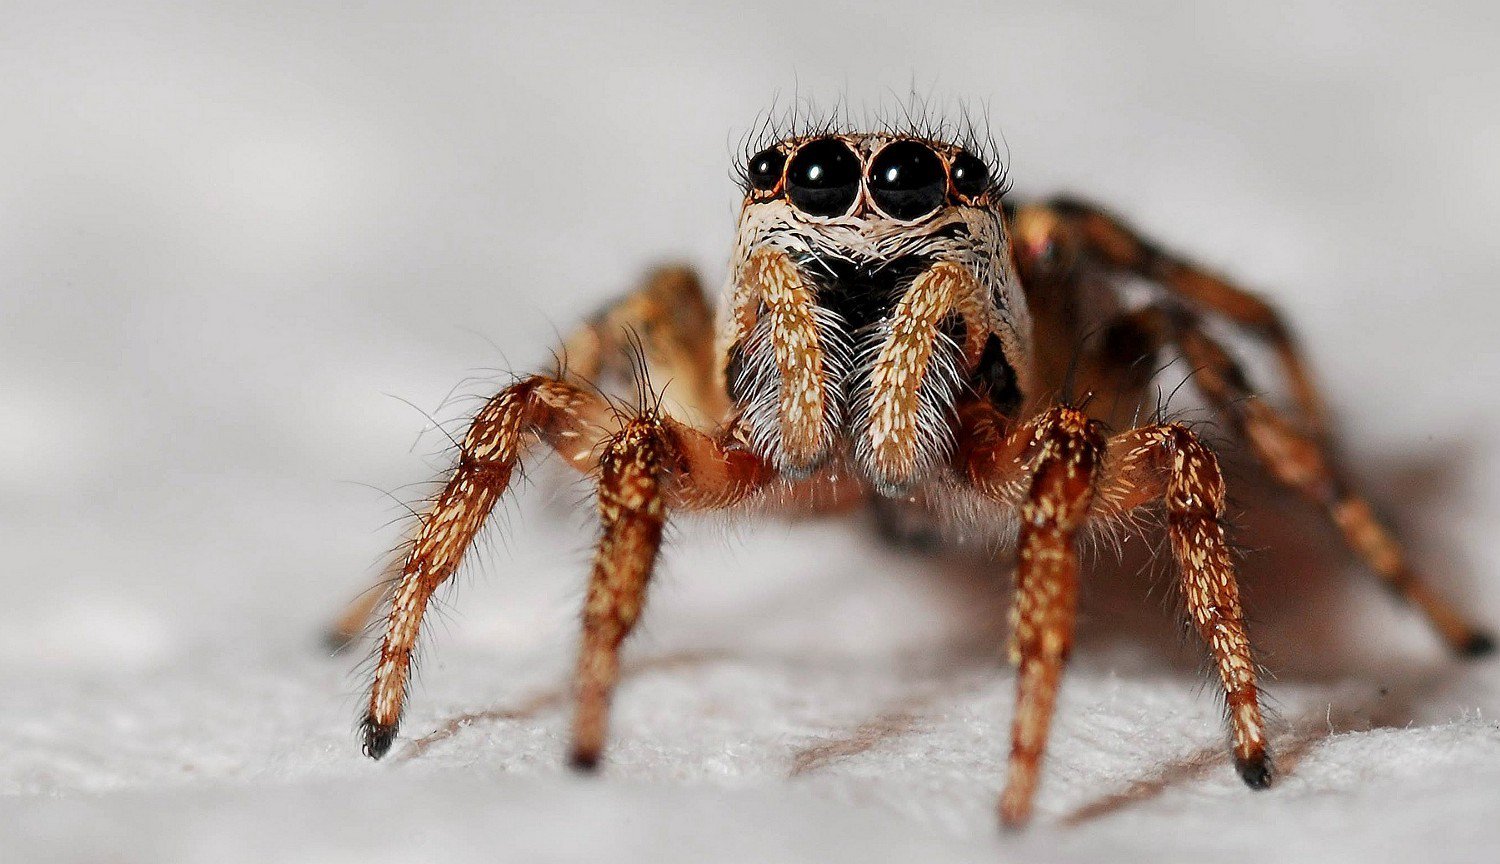 जीवाश्म मकड़ी के लिए कैसे जानता है चमक आंखों के बाद भी लाखों साल